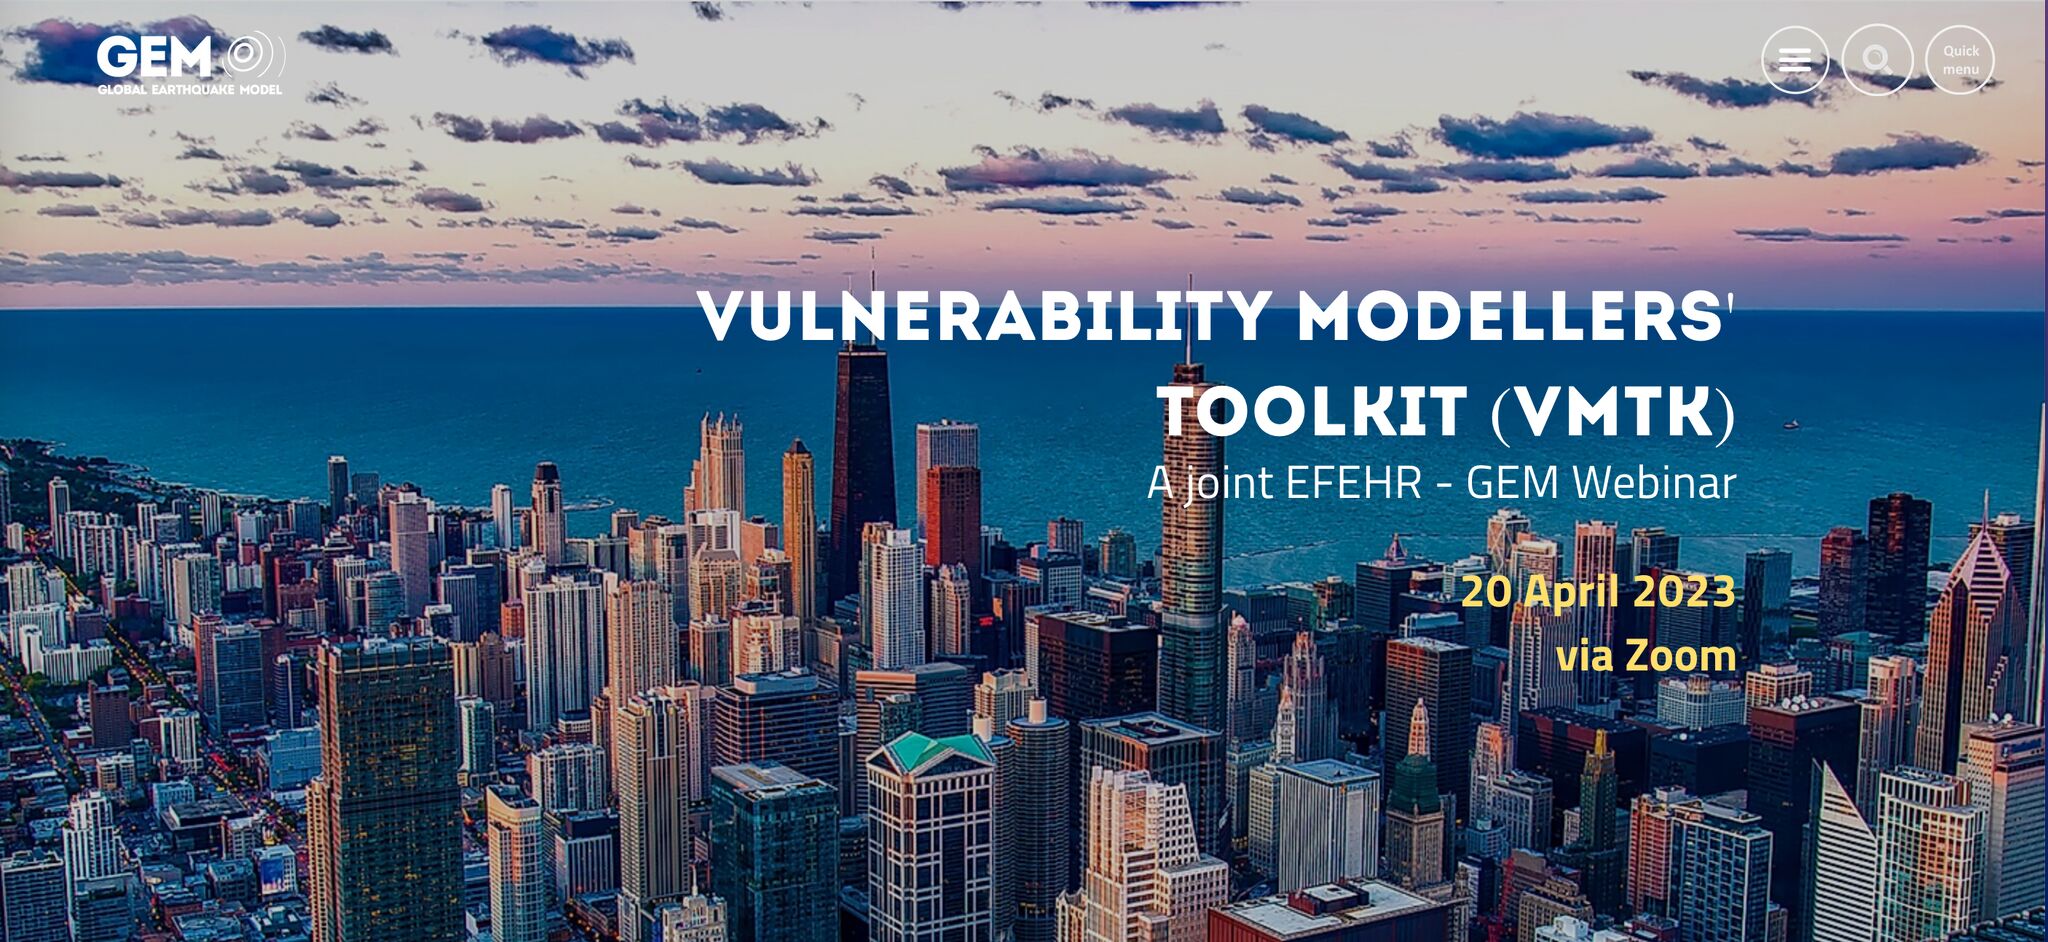 Joint EFEHR - GEM Webinar: Vulnerability Modellers' Toolkit (VMTK)